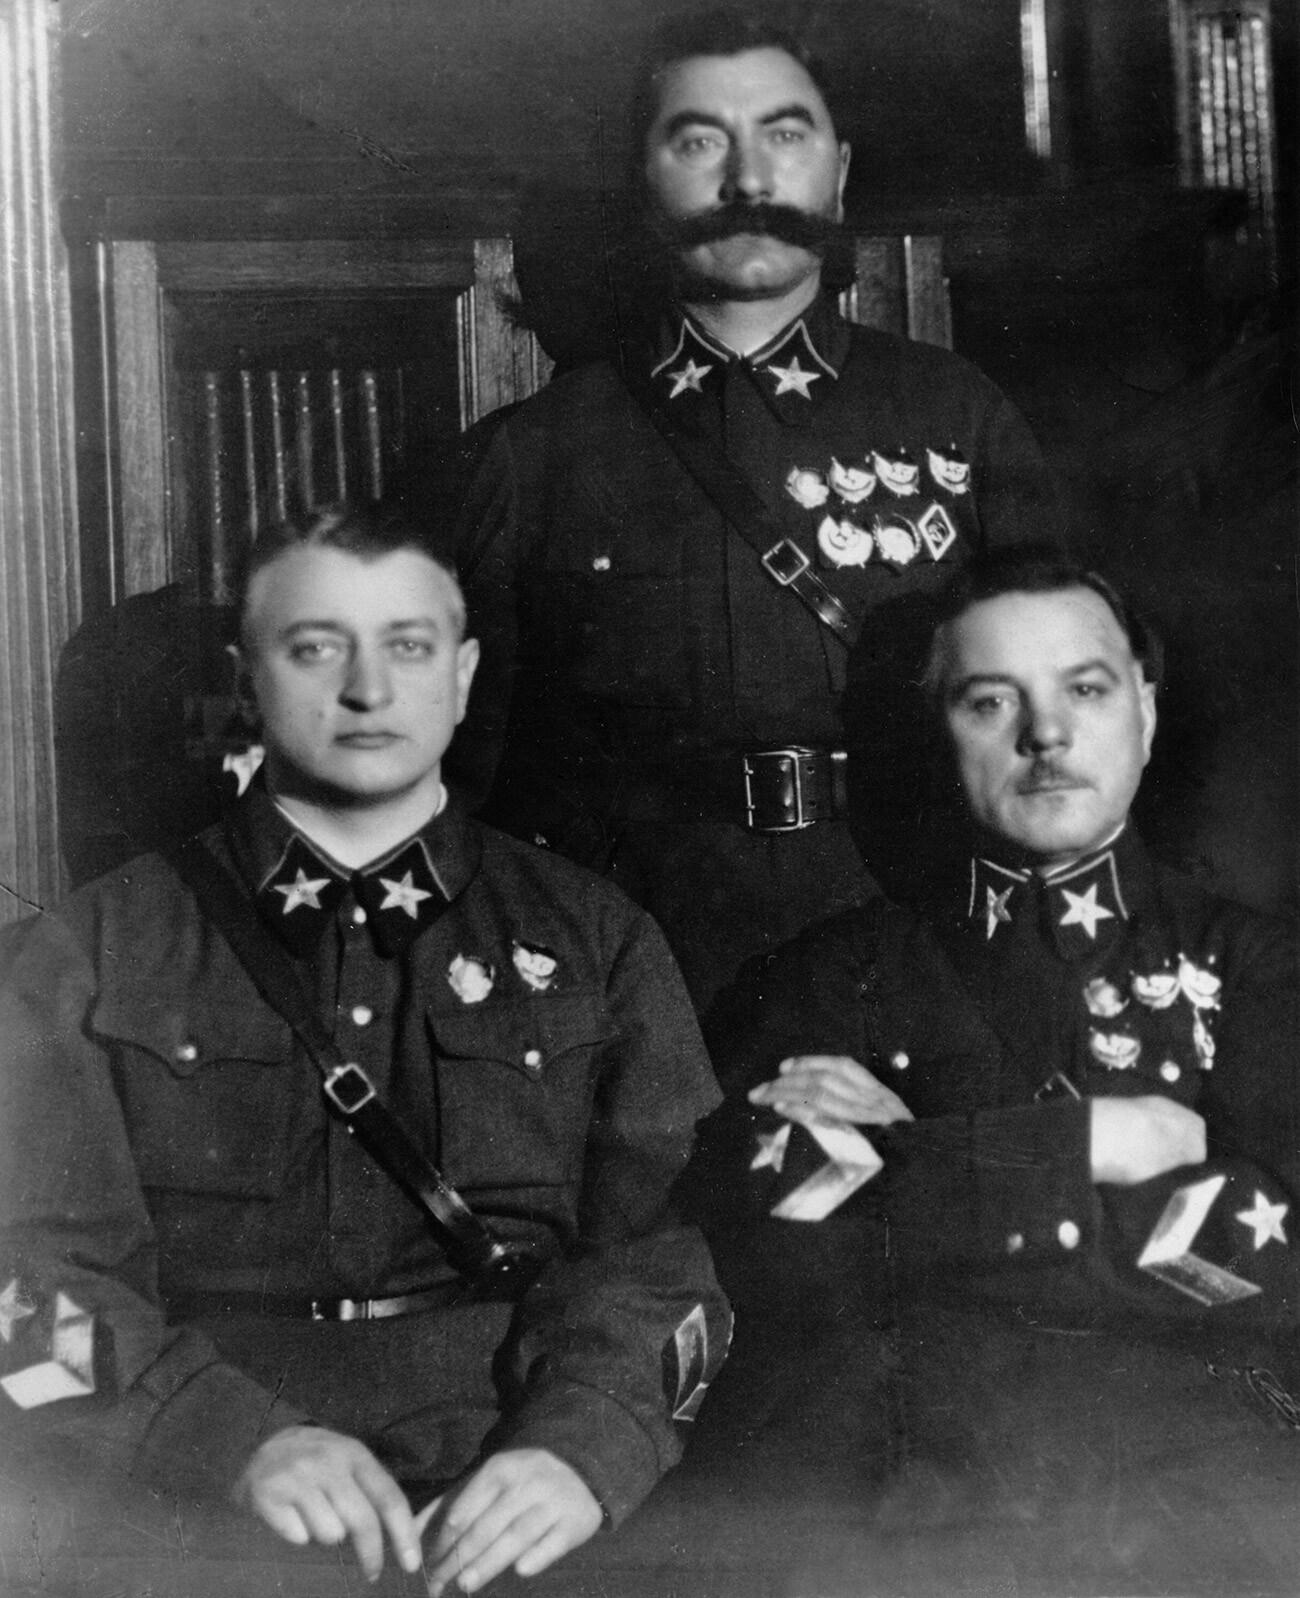 Почему Сталин расстрелял маршала Тухачевского? - Узнай Россию